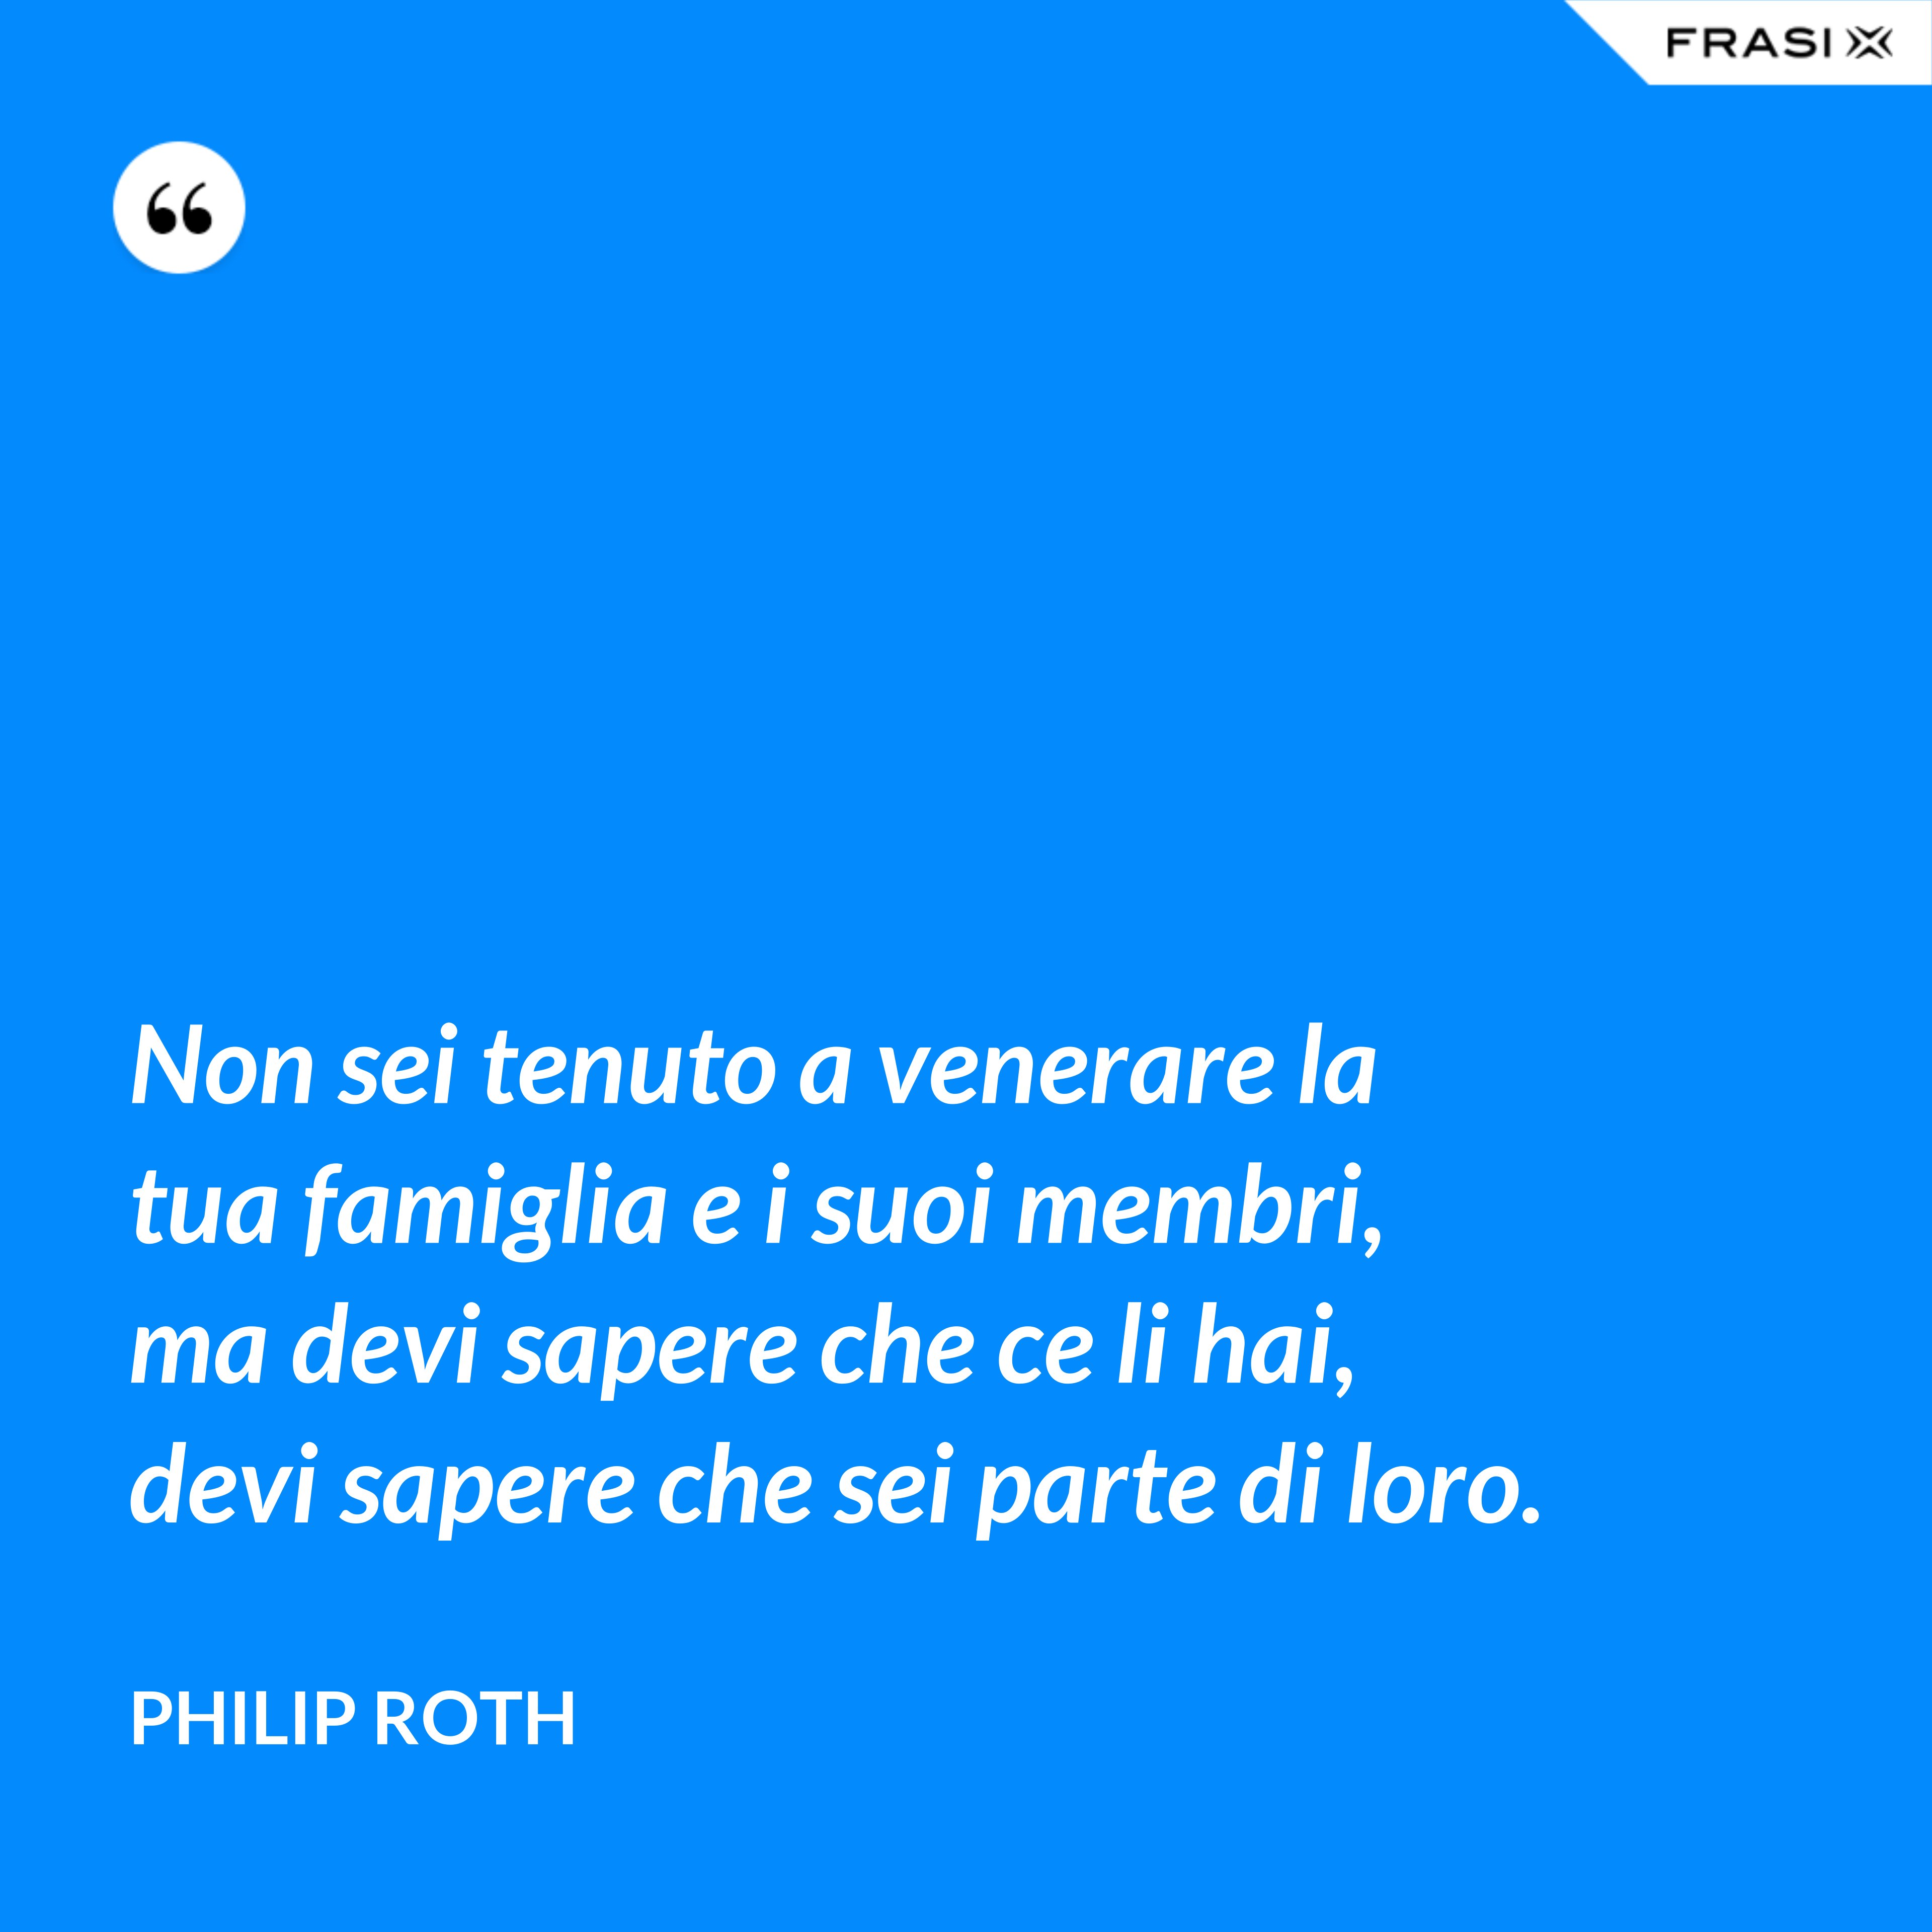 Non sei tenuto a venerare la tua famiglia e i suoi membri, ma devi sapere che ce li hai, devi sapere che sei parte di loro. - Philip Roth